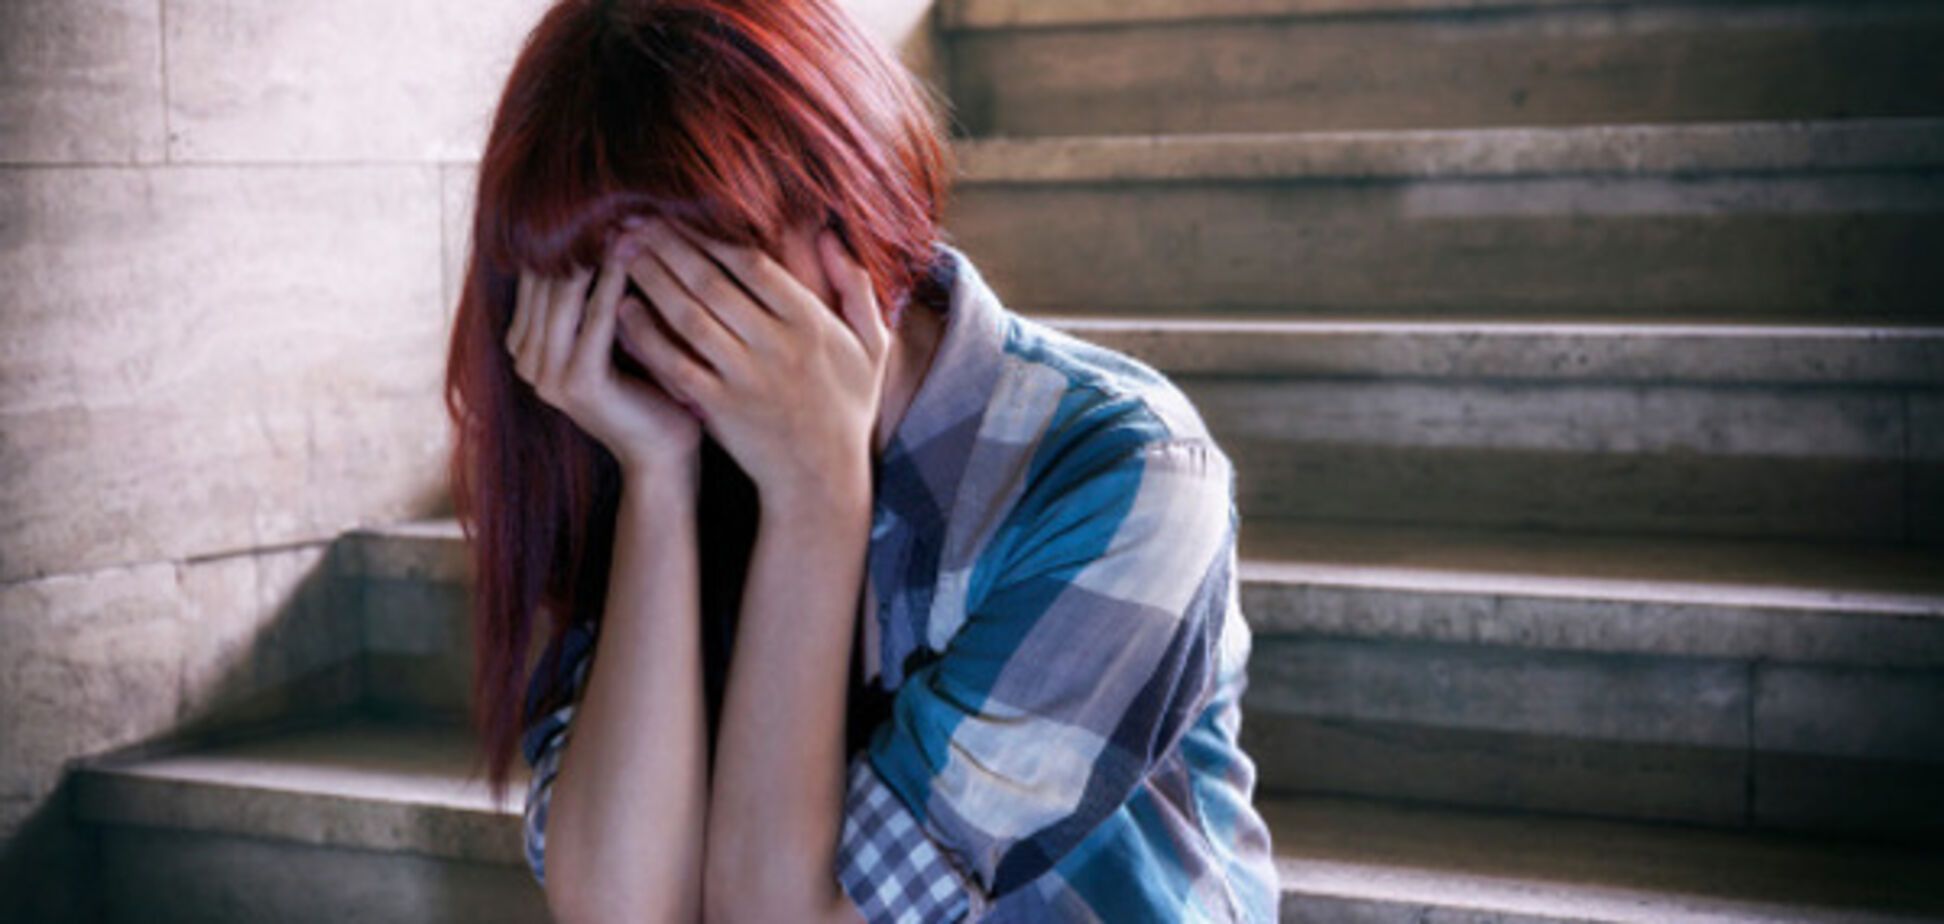 Как уберечь ребенка от суицида: психолог дал 4 важных совета